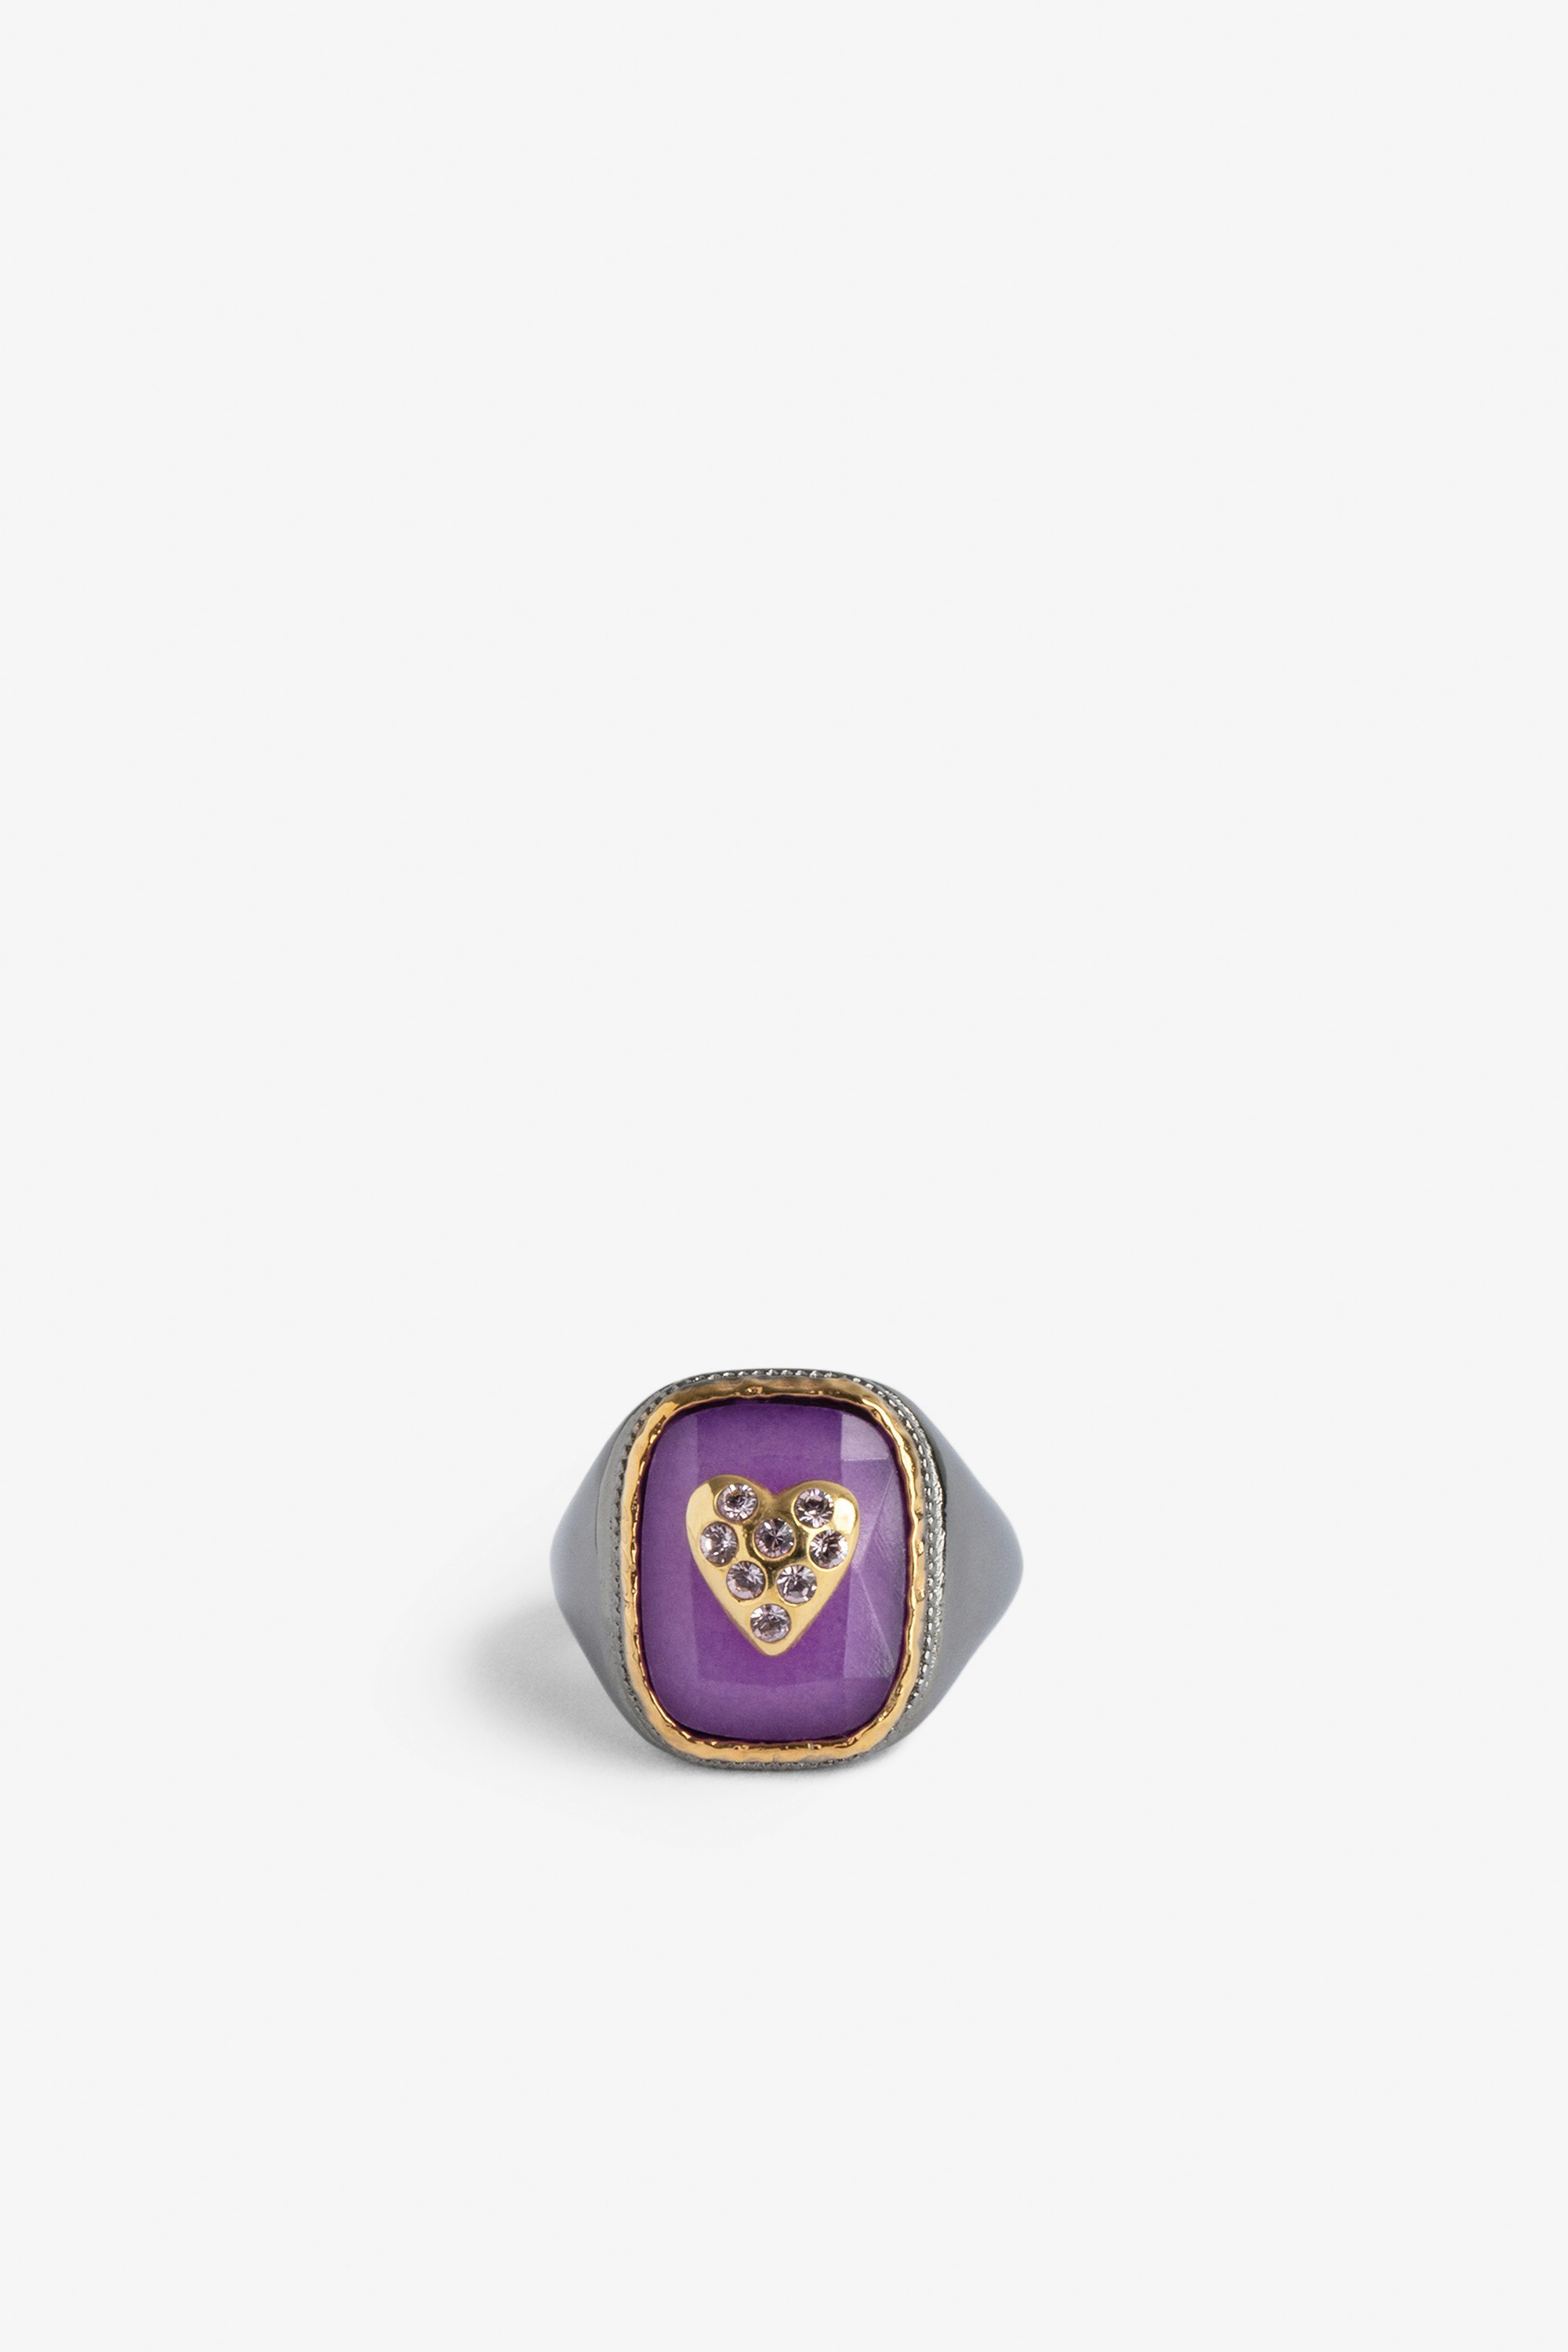 Bague Chevalière Heart Bague chevalière ornée d'une pierre violette sertie d'un coeur en laiton doré.